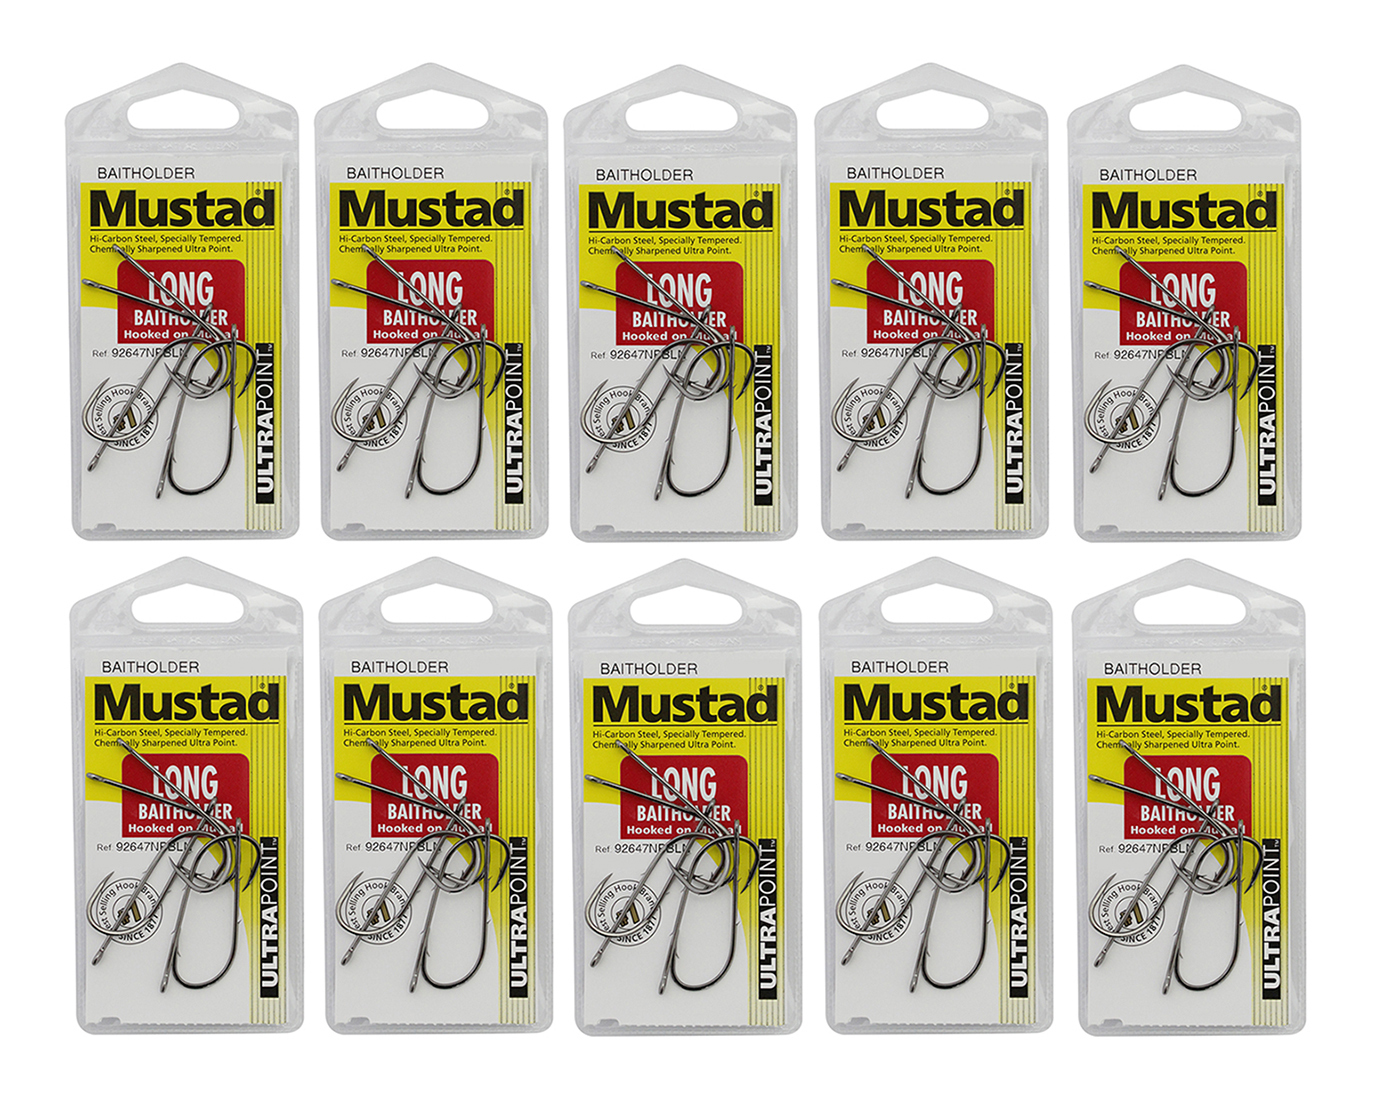 Mustad Long Baitholder - Size 1 - 92647npbln - Bulk 10 Pce Value Pack